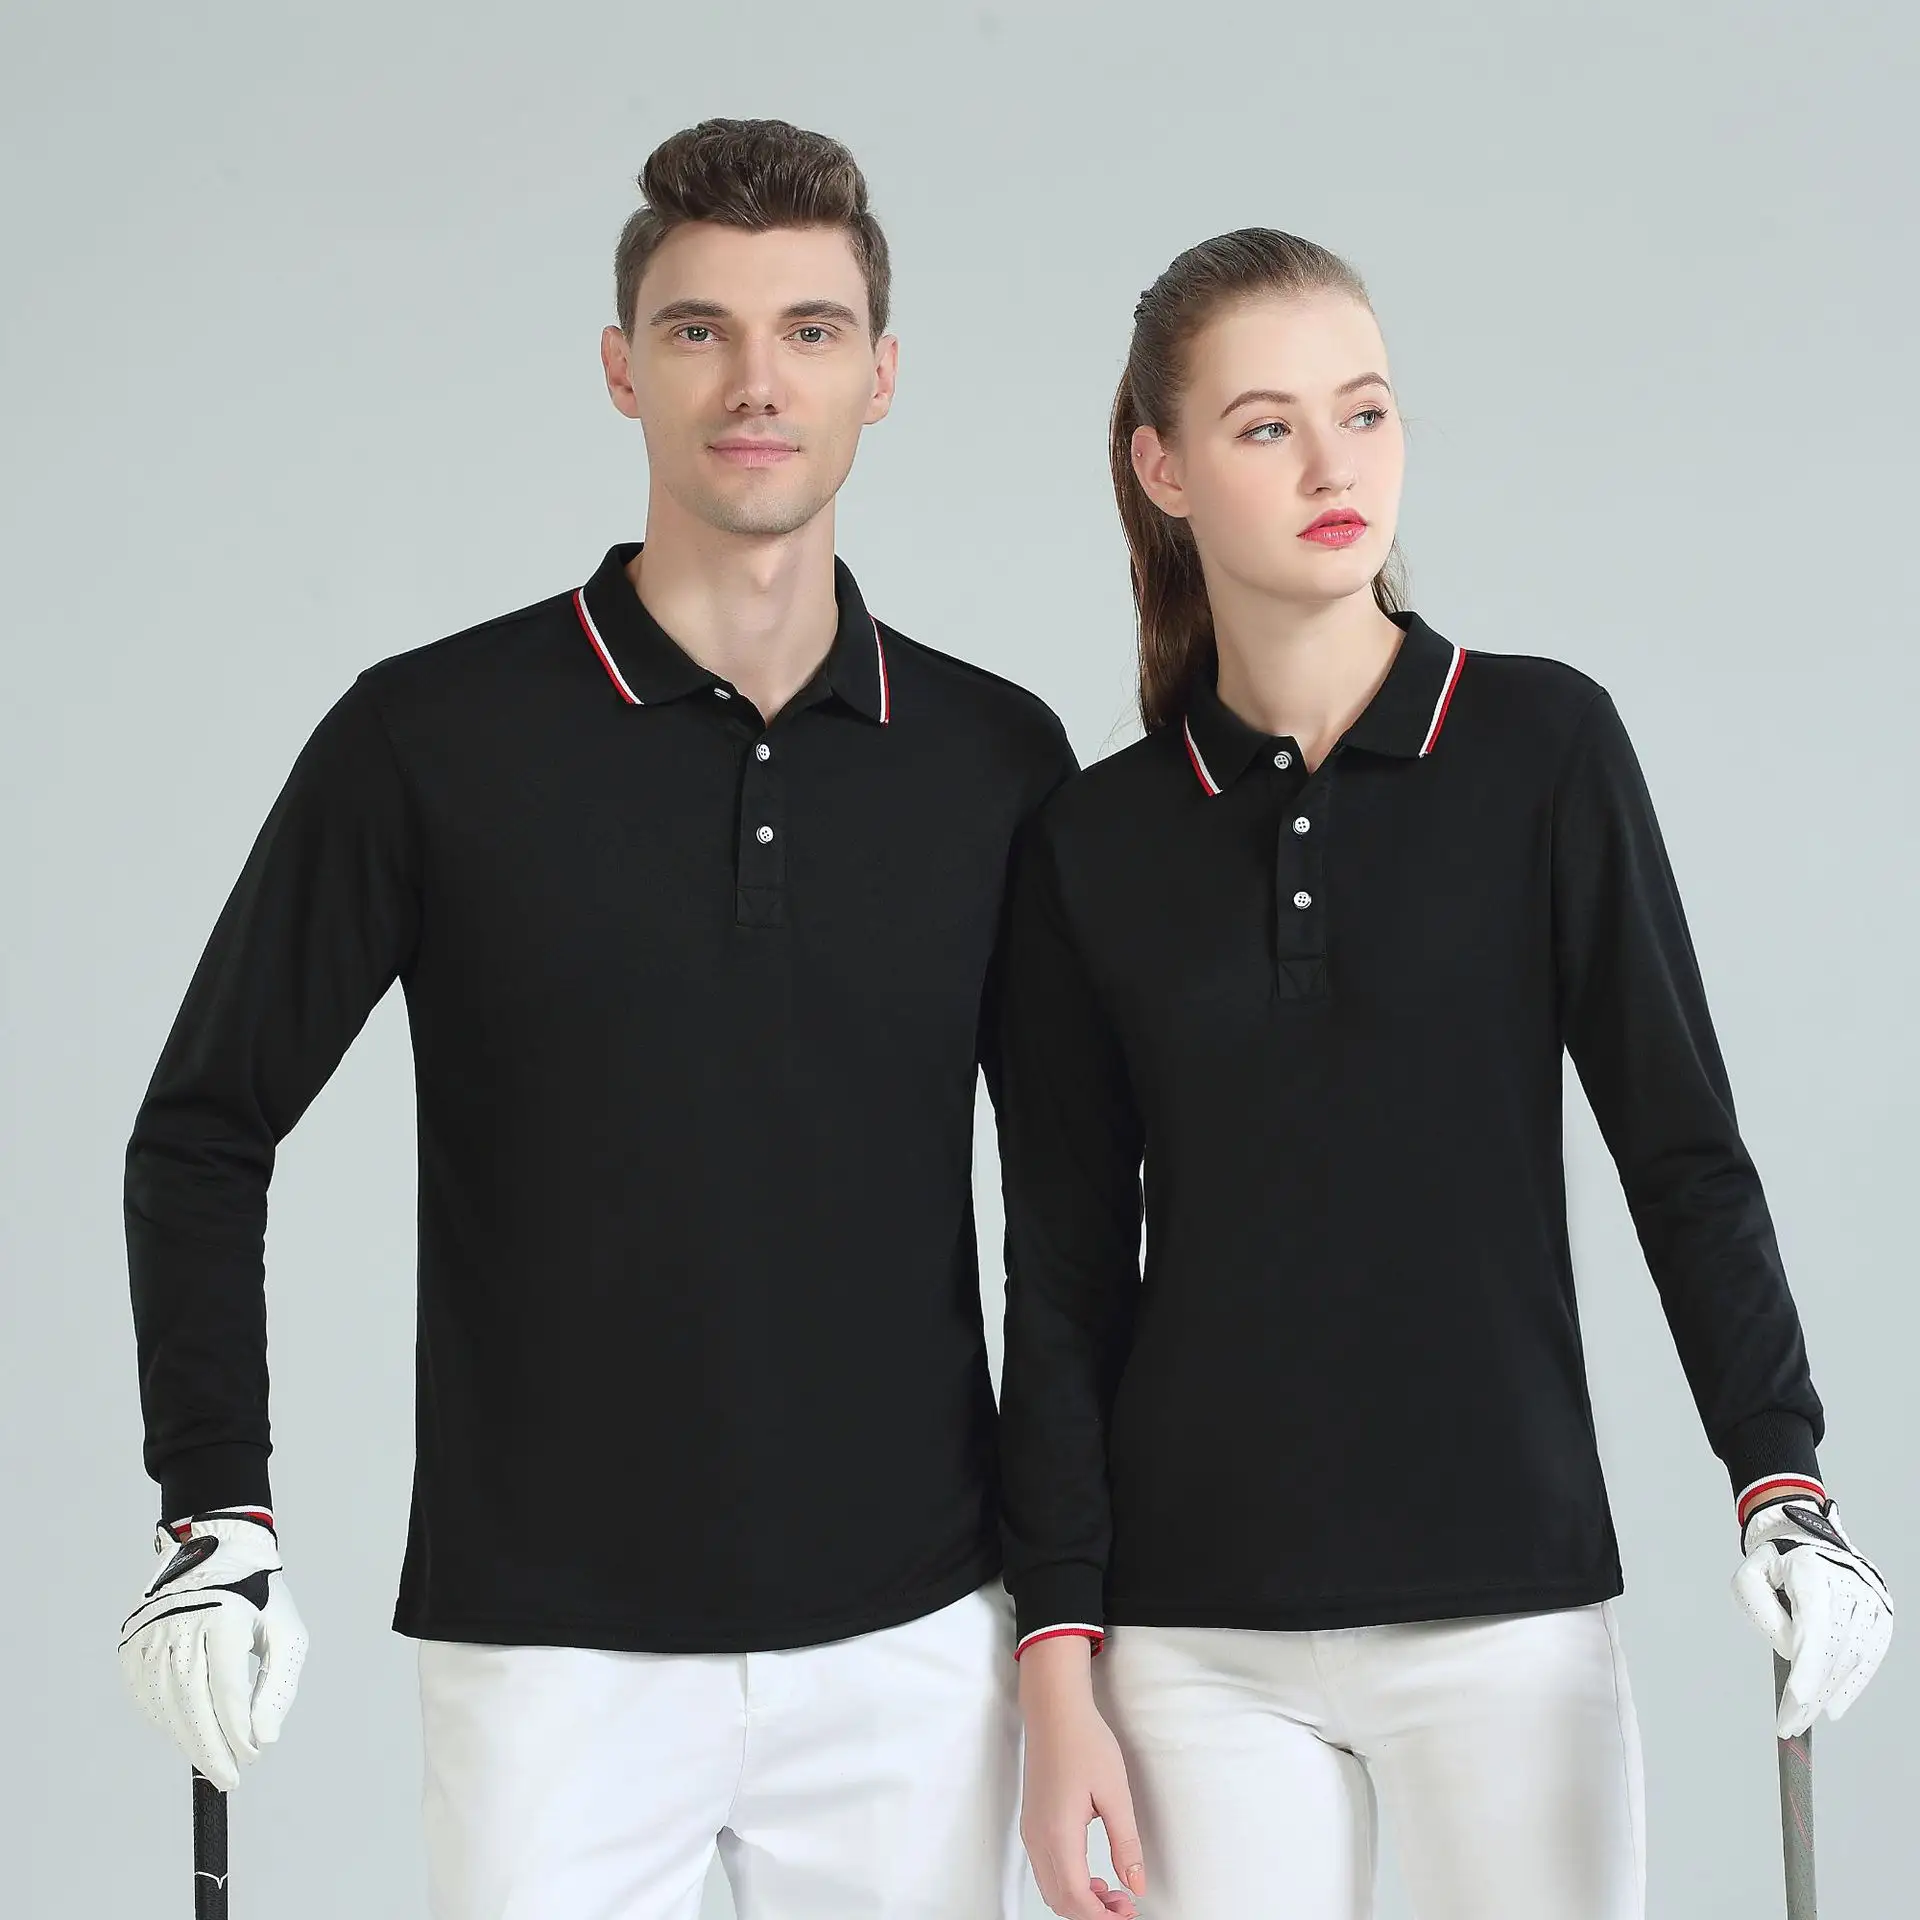 เสื้อยืดโปโลแขนยาวยูนิเซ็กส์เสื้อโปโลผ้าฝ้ายออกแบบโลโก้ได้ตามต้องการสำหรับกีฬากอล์ฟแขนยาว